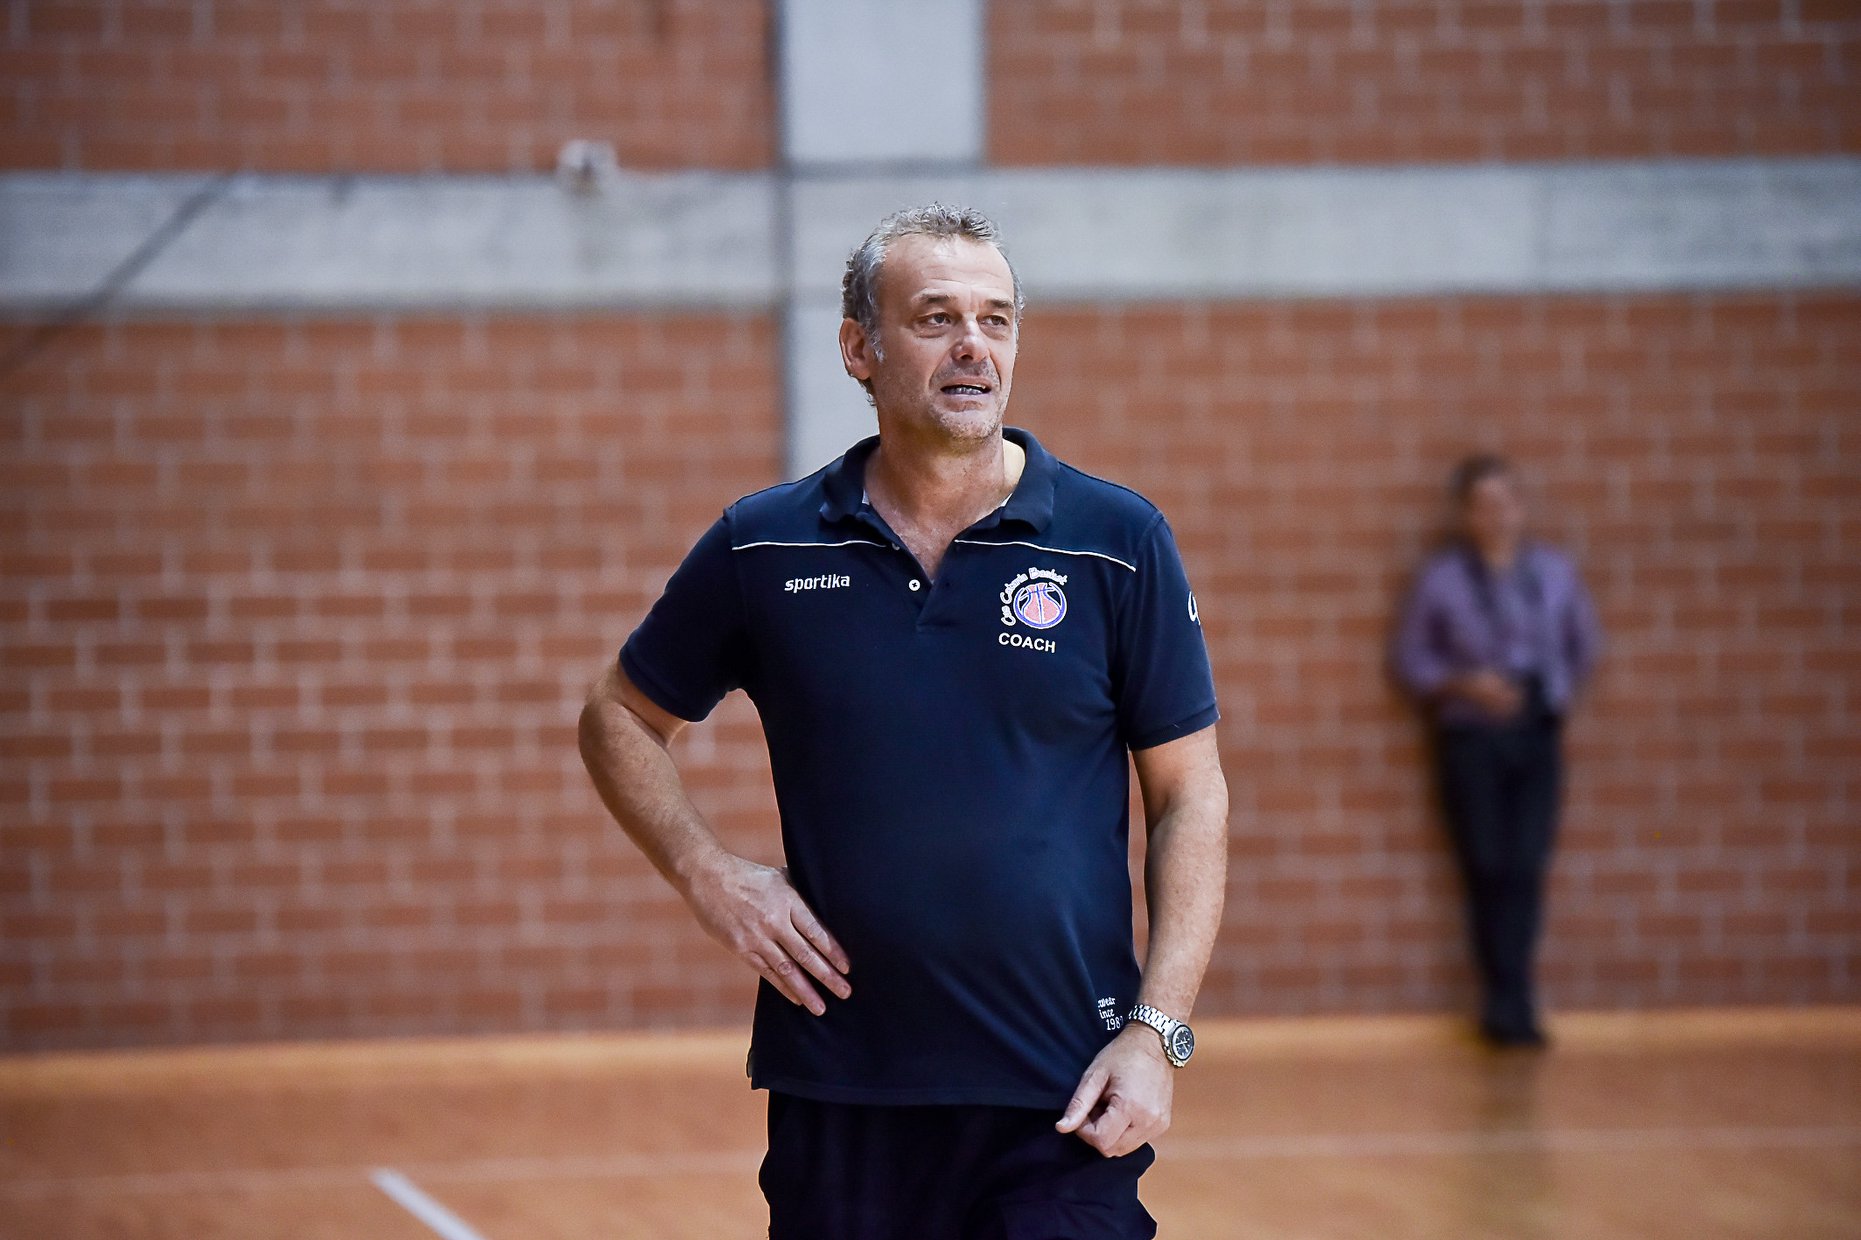 Coach Giuseppe Guadalupi